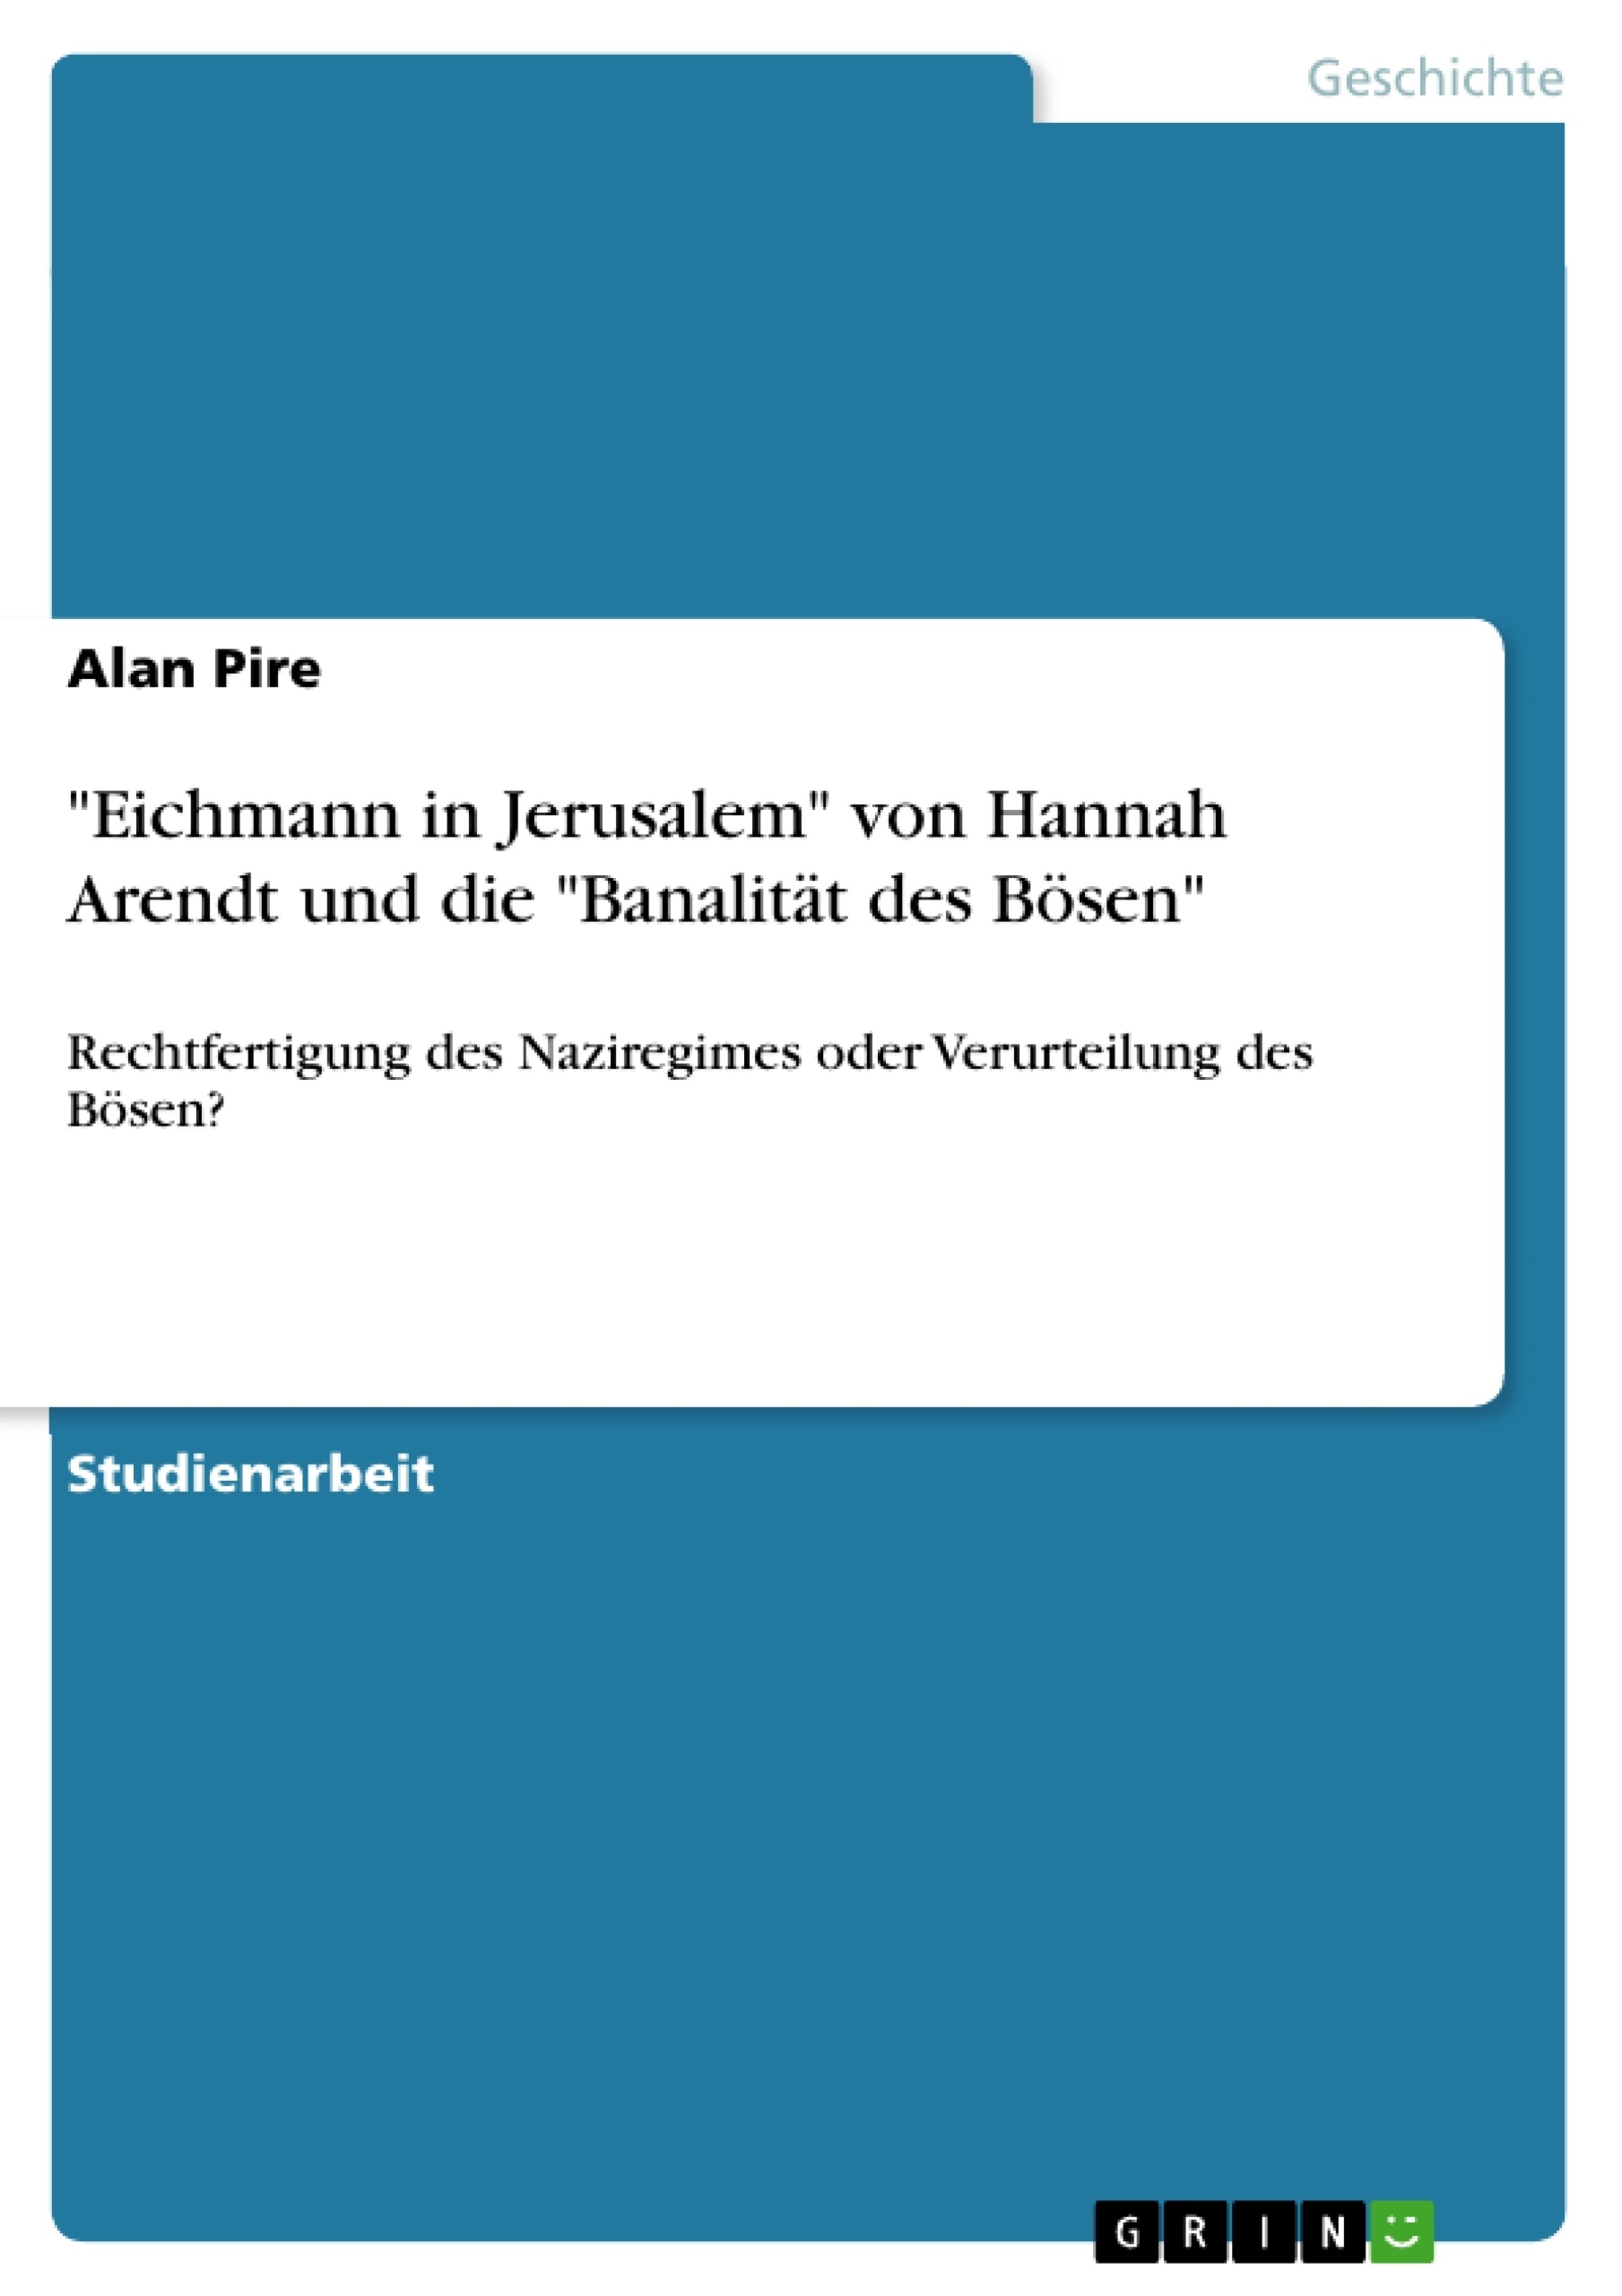 Title: "Eichmann in Jerusalem" von Hannah Arendt und die "Banalität des Bösen"